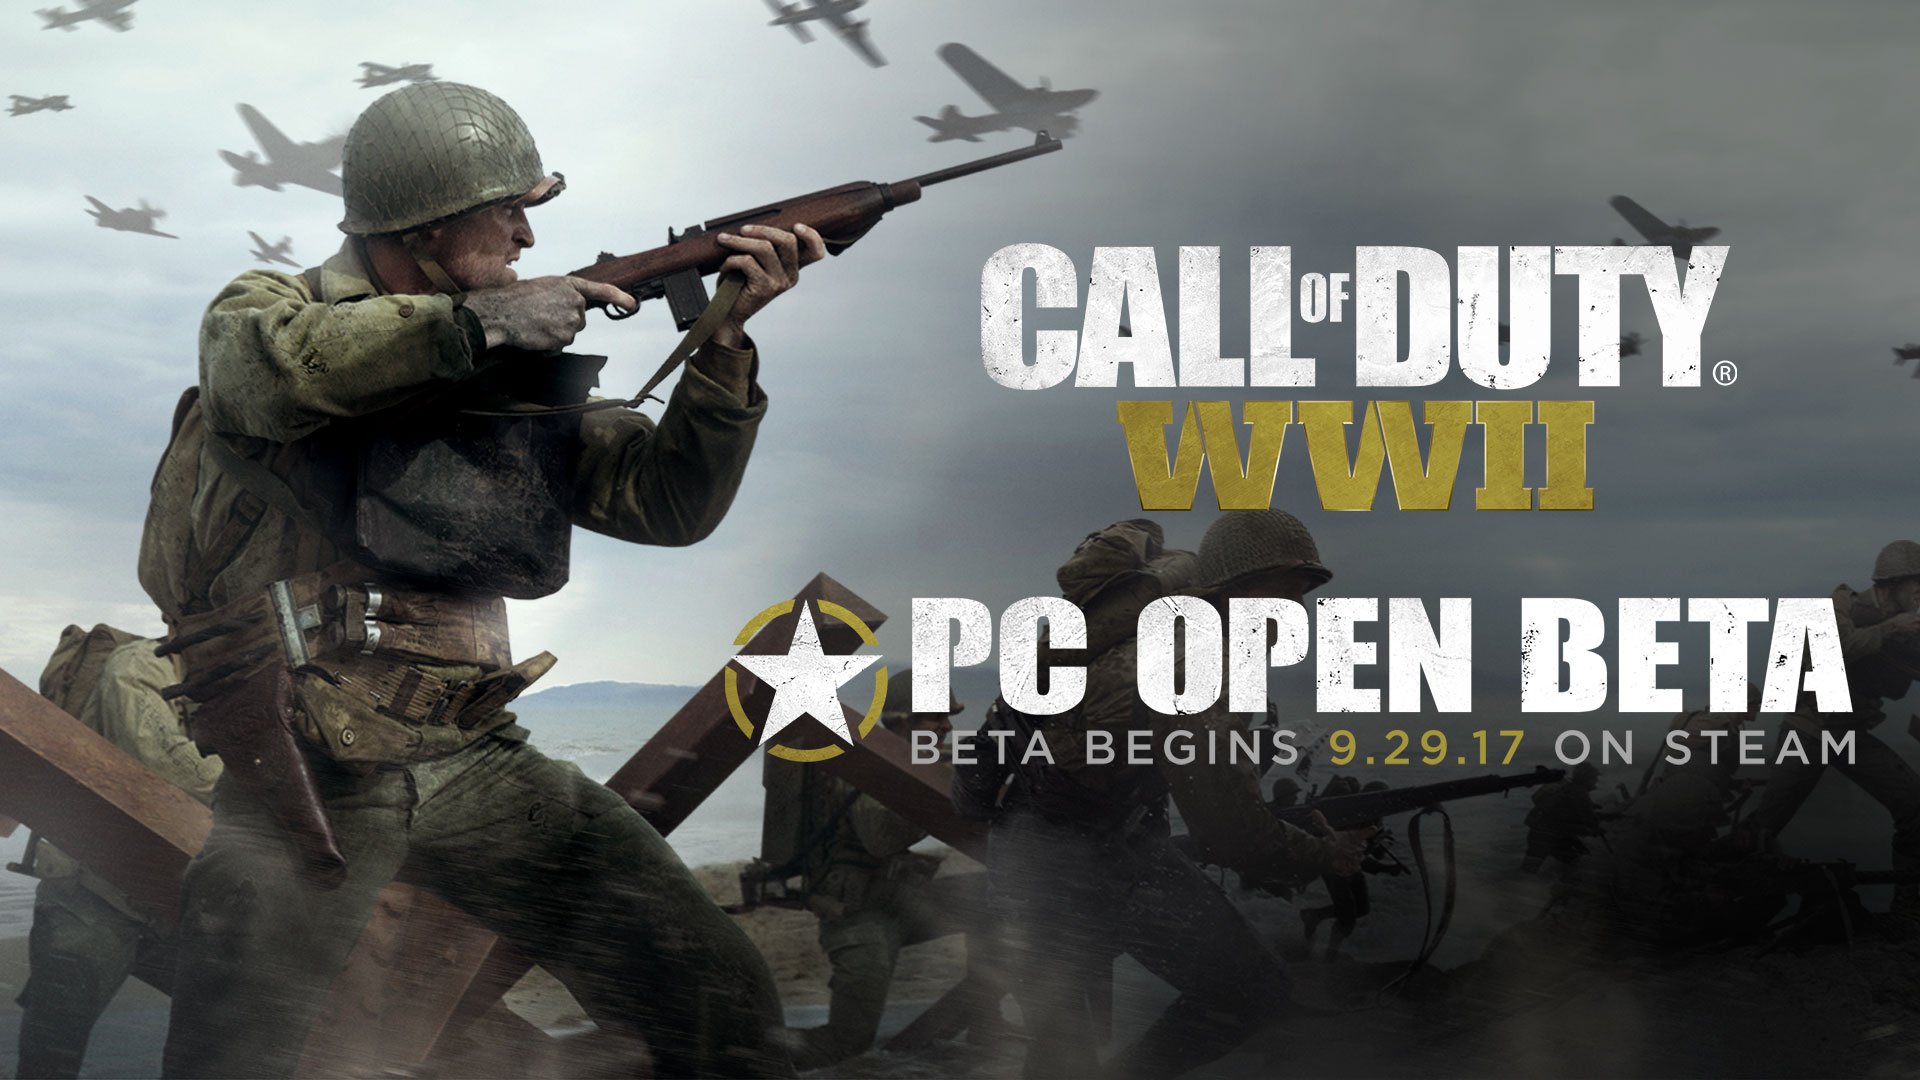 Siêu phẩm bắn súng Call of Duty: WWII đang cho chơi thử miễn phí trên Steam